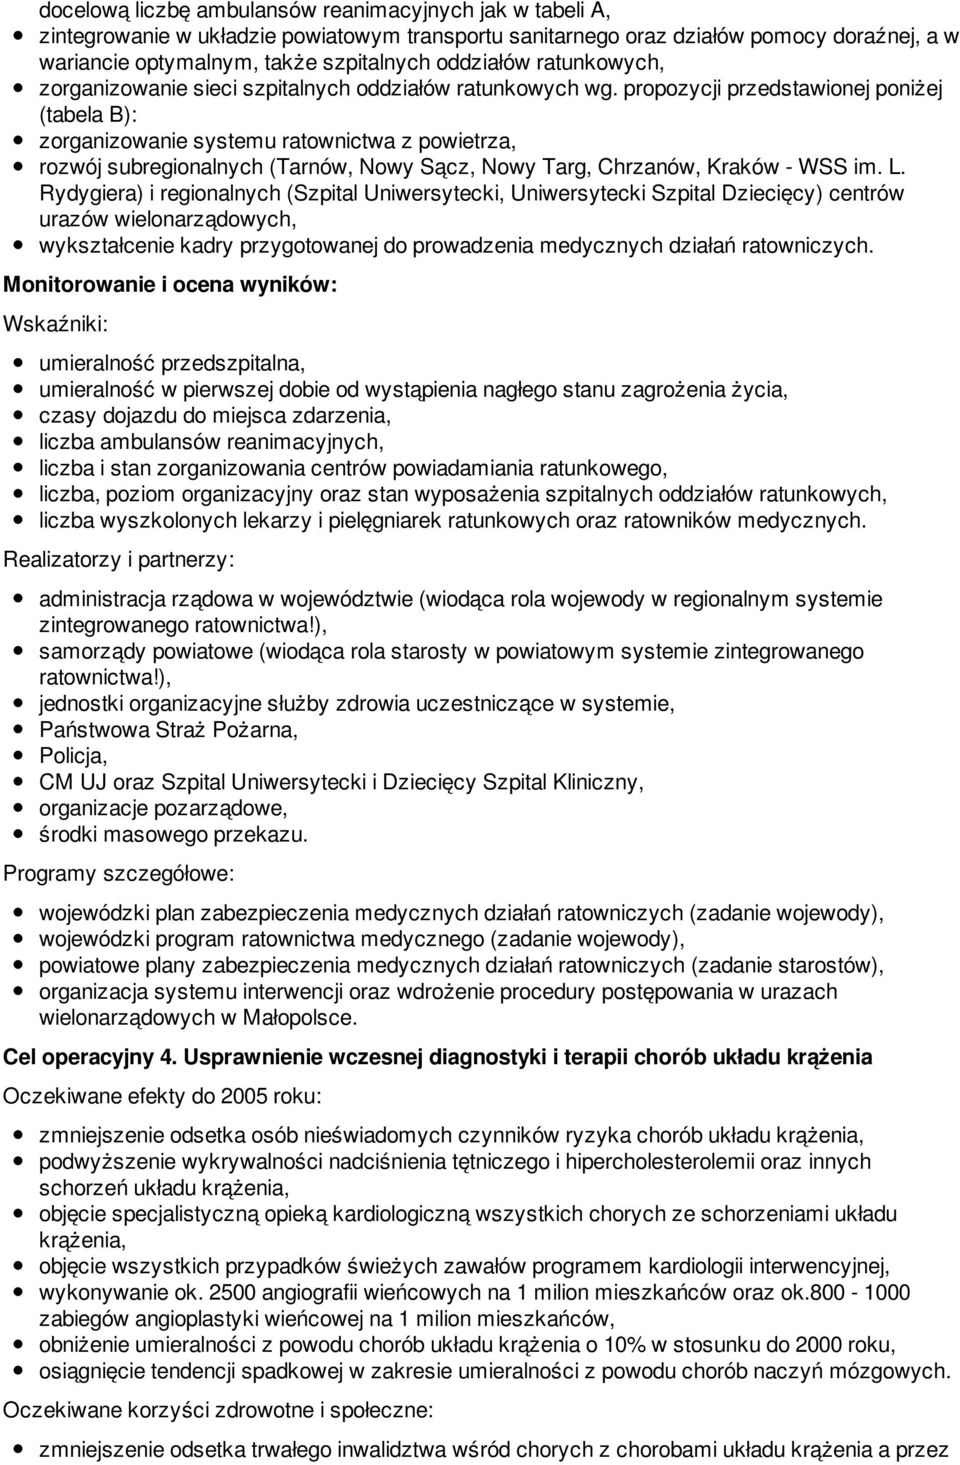 propozycji przedstawionej poniżej (tabela B): zorganizowanie systemu ratownictwa z powietrza, rozwój subregionalnych (Tarnów, Nowy Sącz, Nowy Targ, Chrzanów, Kraków - WSS im. L.